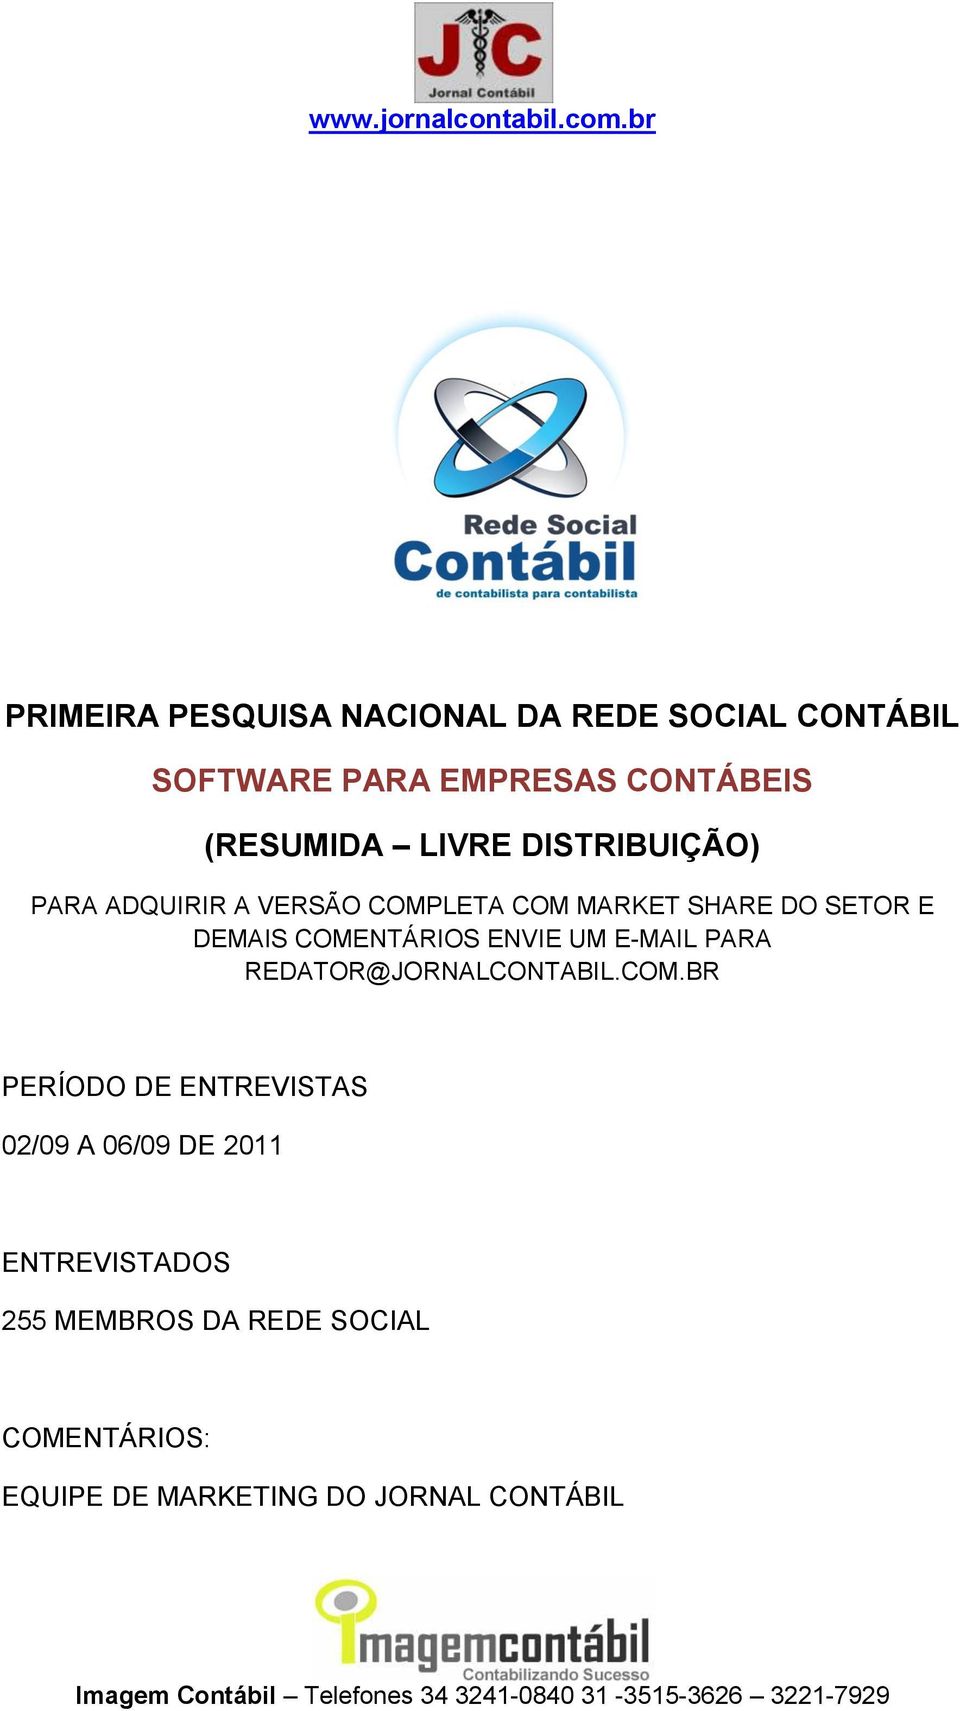 COMENTÁRIOS ENVIE UM E-MAIL PARA REDATOR@JORNALCONTABIL.COM.BR PERÍODO DE ENTREVISTAS 02/09 A